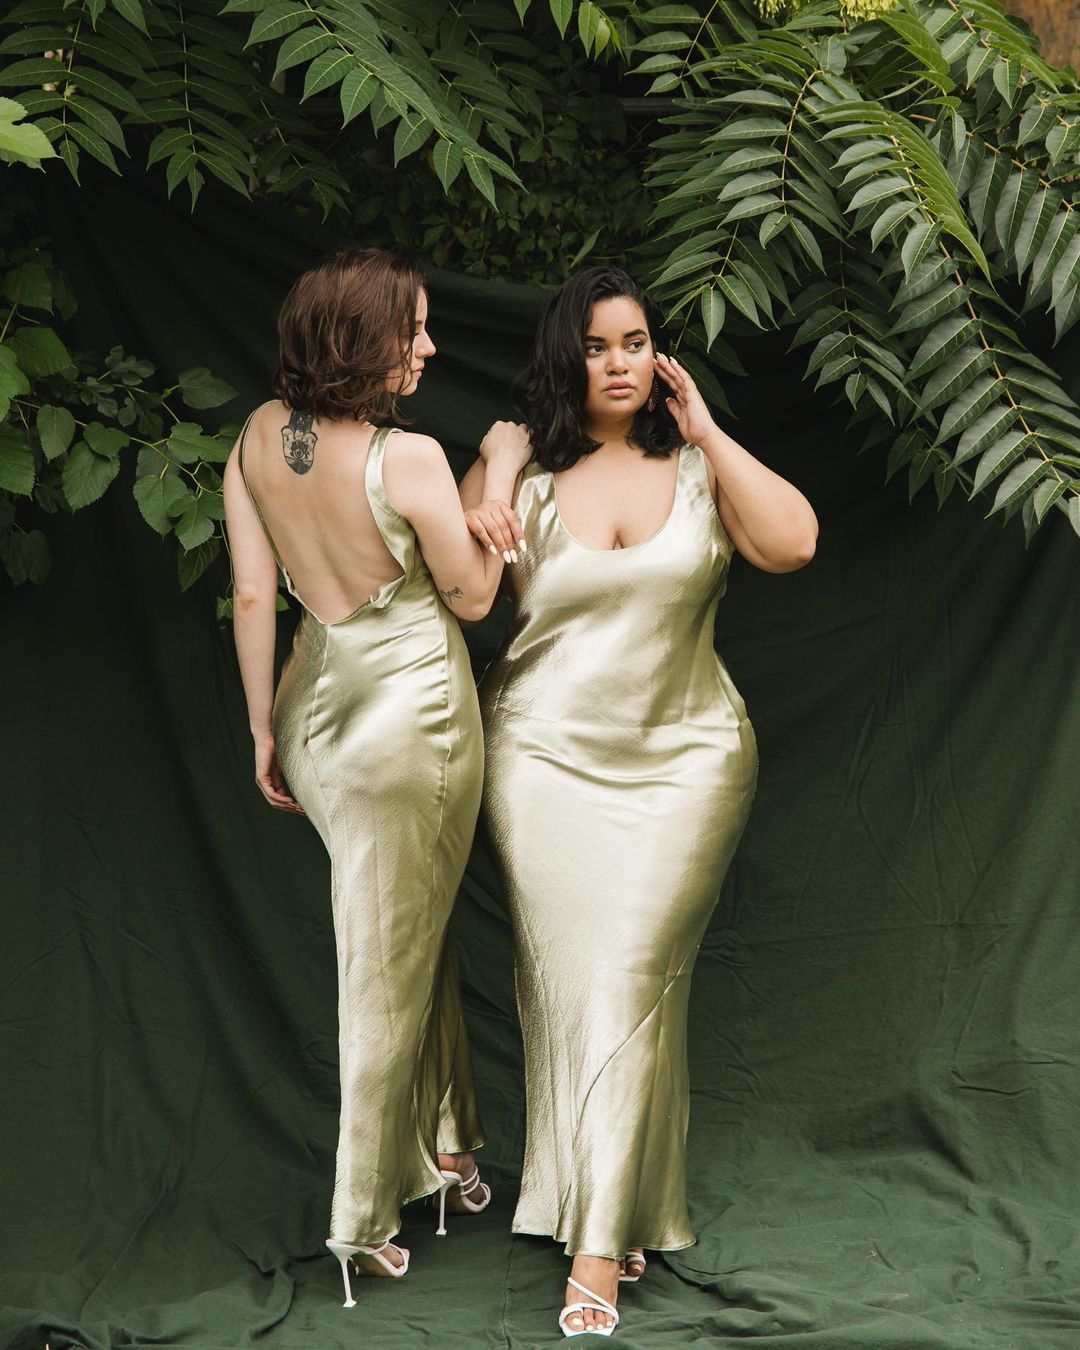 Body Positive Denise Mercedes y María Castellanos |:  Vestirse para impresionar.  dos amigas demuestran que el estilo brilla en todos los cuerpos |  Su belleza: